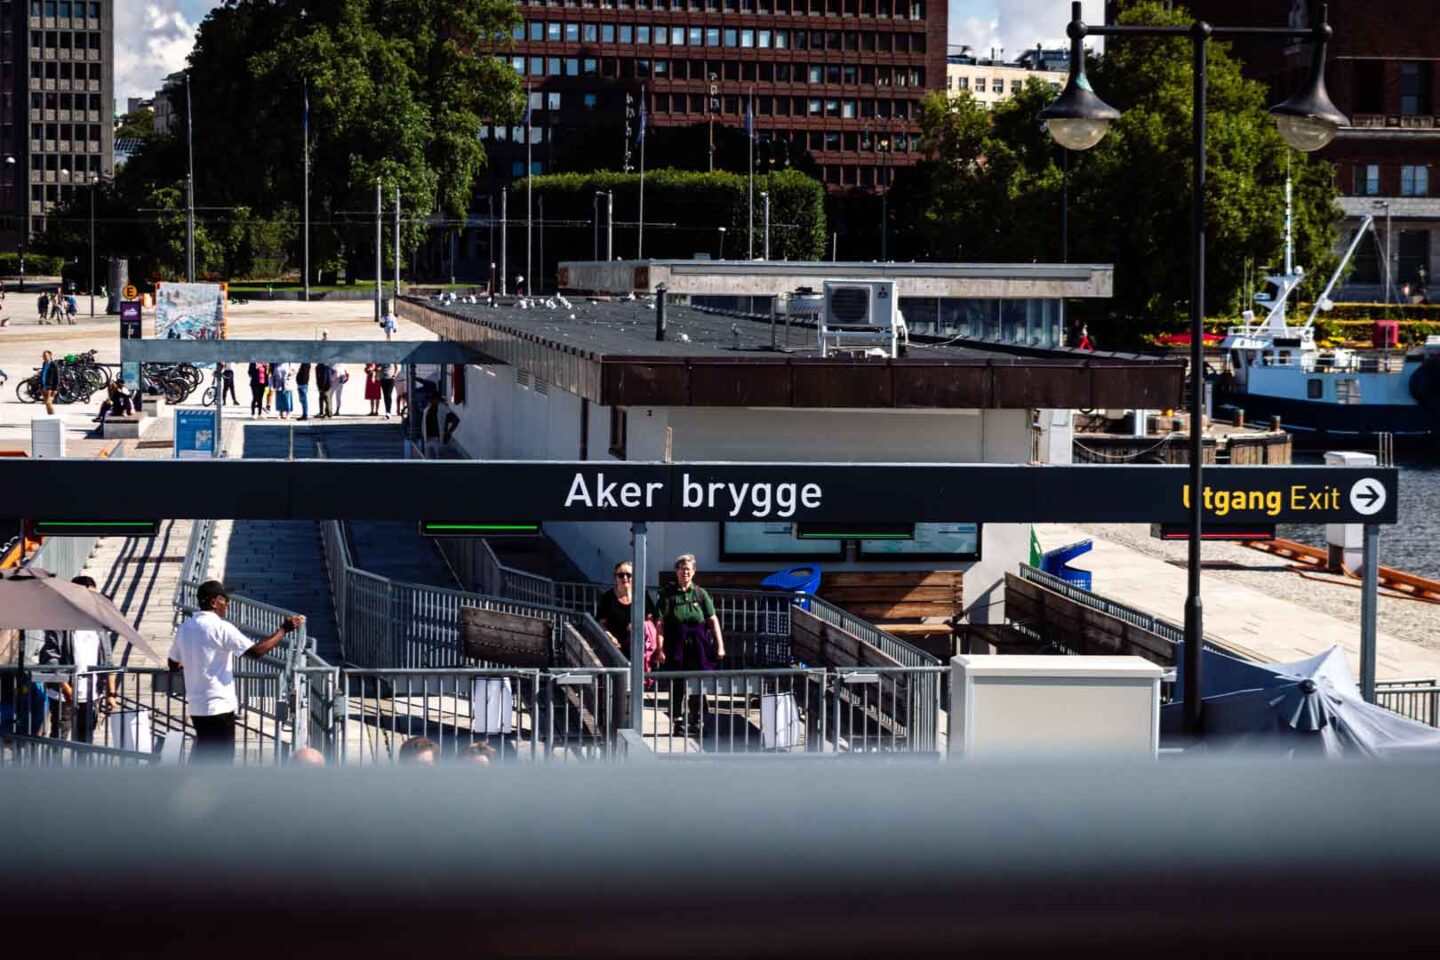 Aker Brygge ferry port in Oslo, Norway